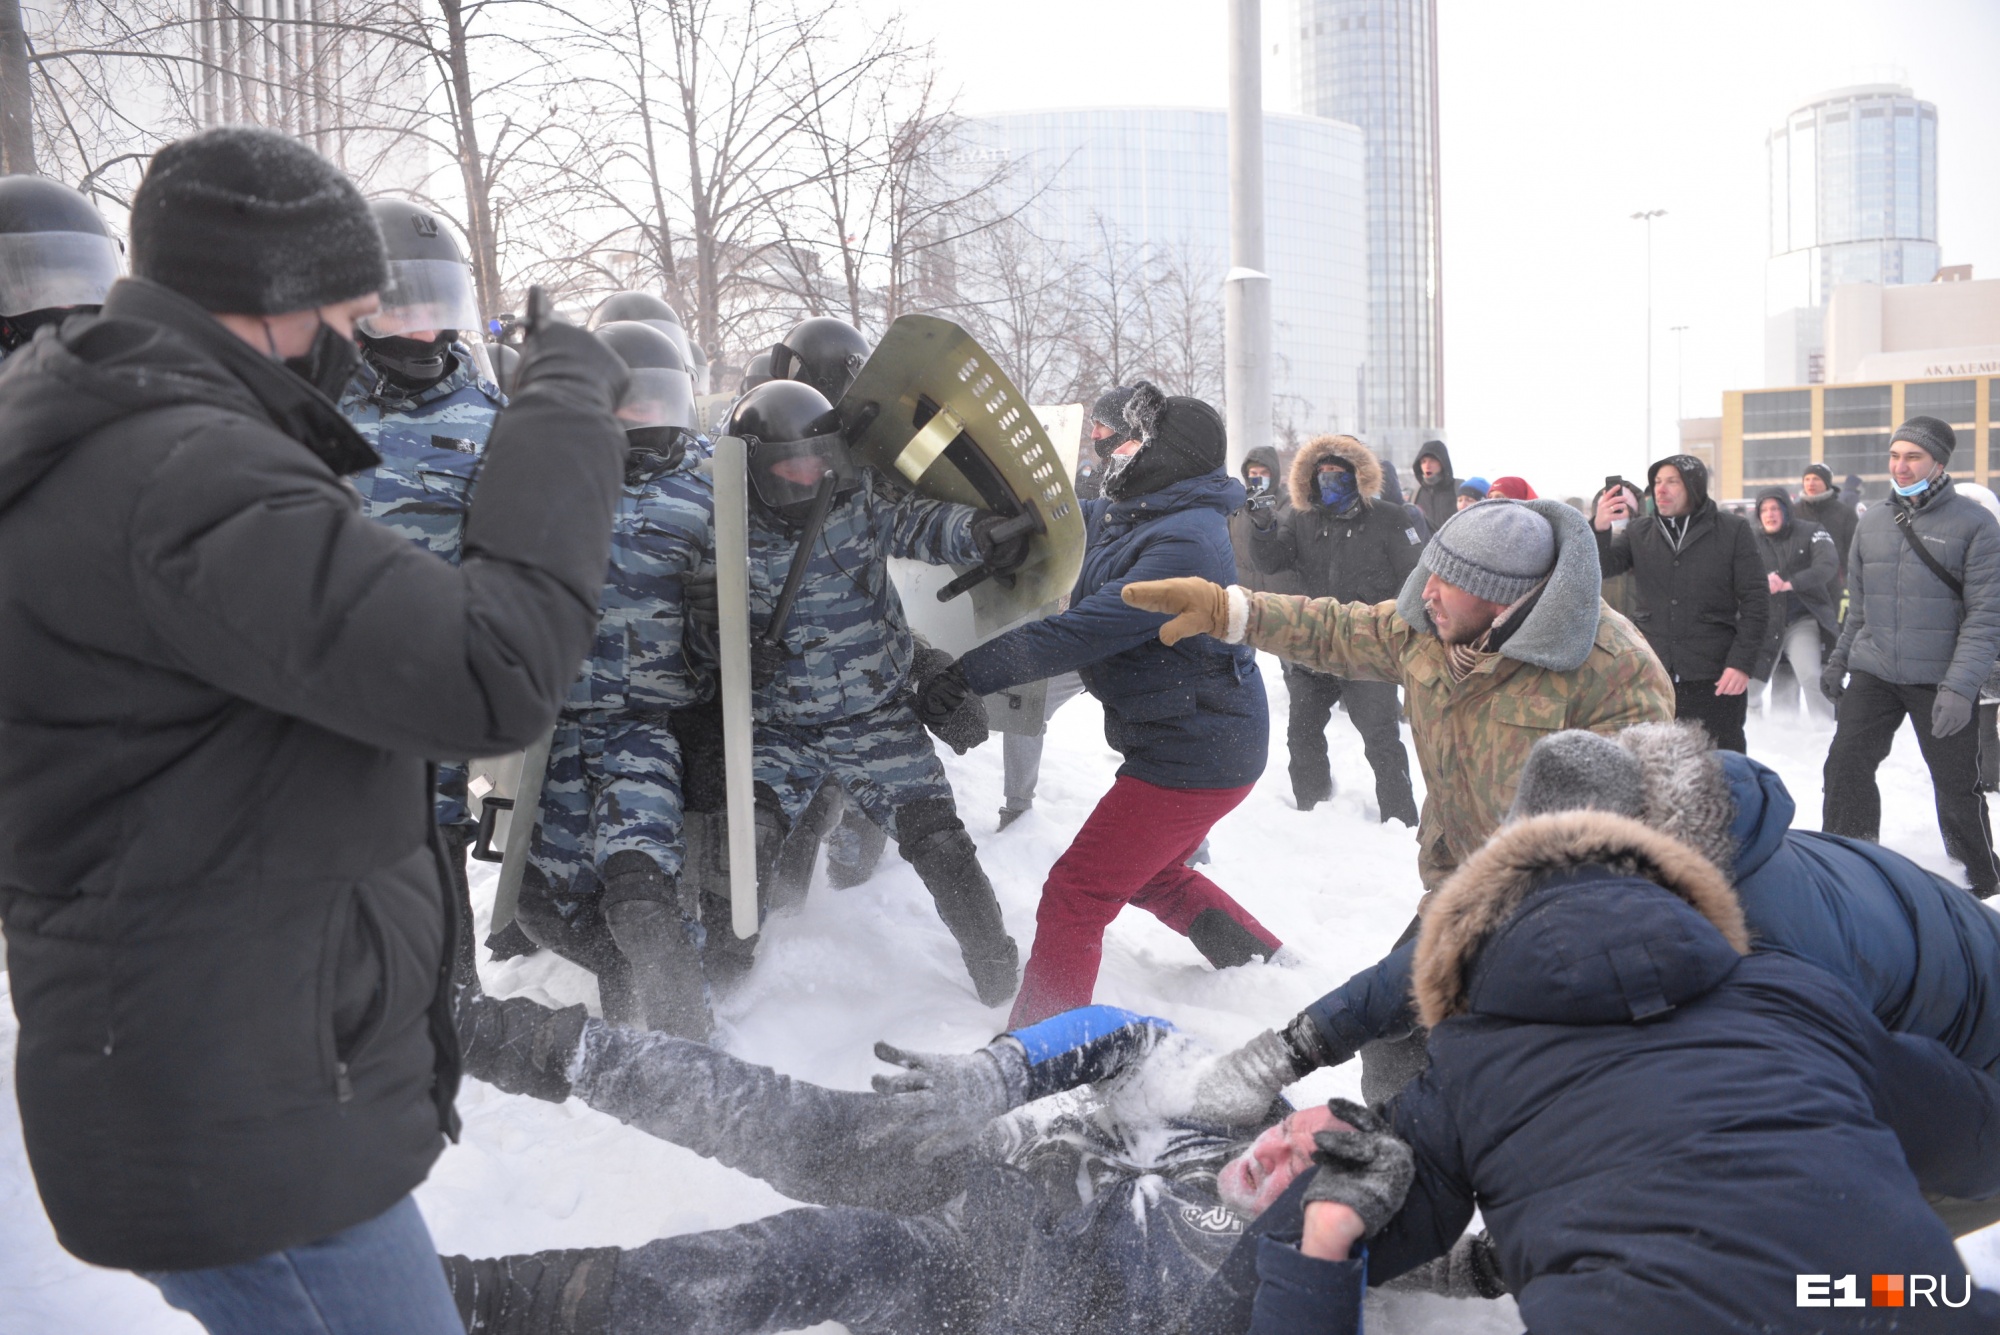 Самый холодный протест в истории города: как в -30 екатеринбуржцы вышли на прогулку и встретились с ОМОНом